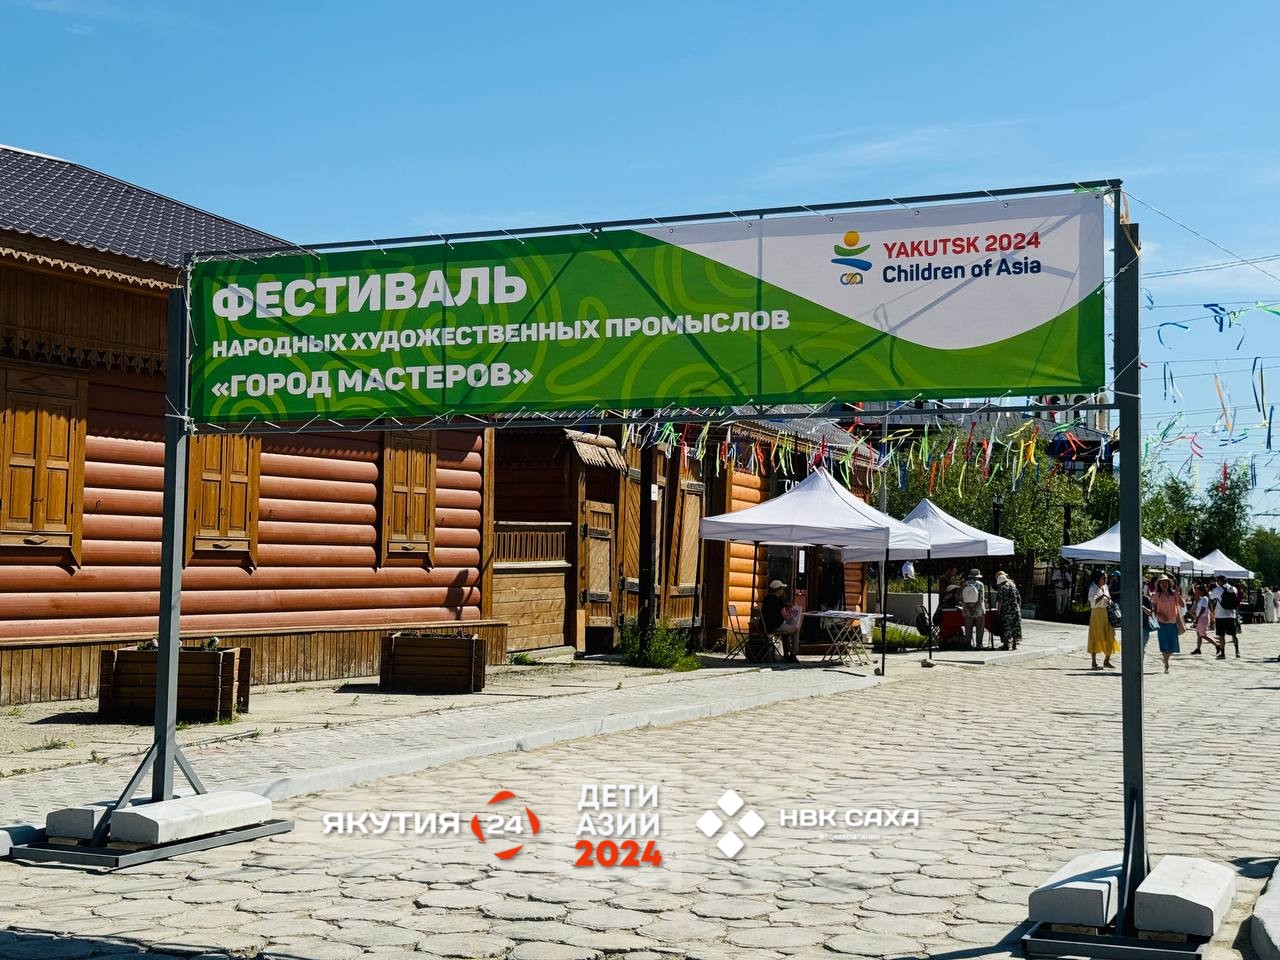 Фестиваль народных художественных промыслов «Город мастеров» продлится до 5 июля